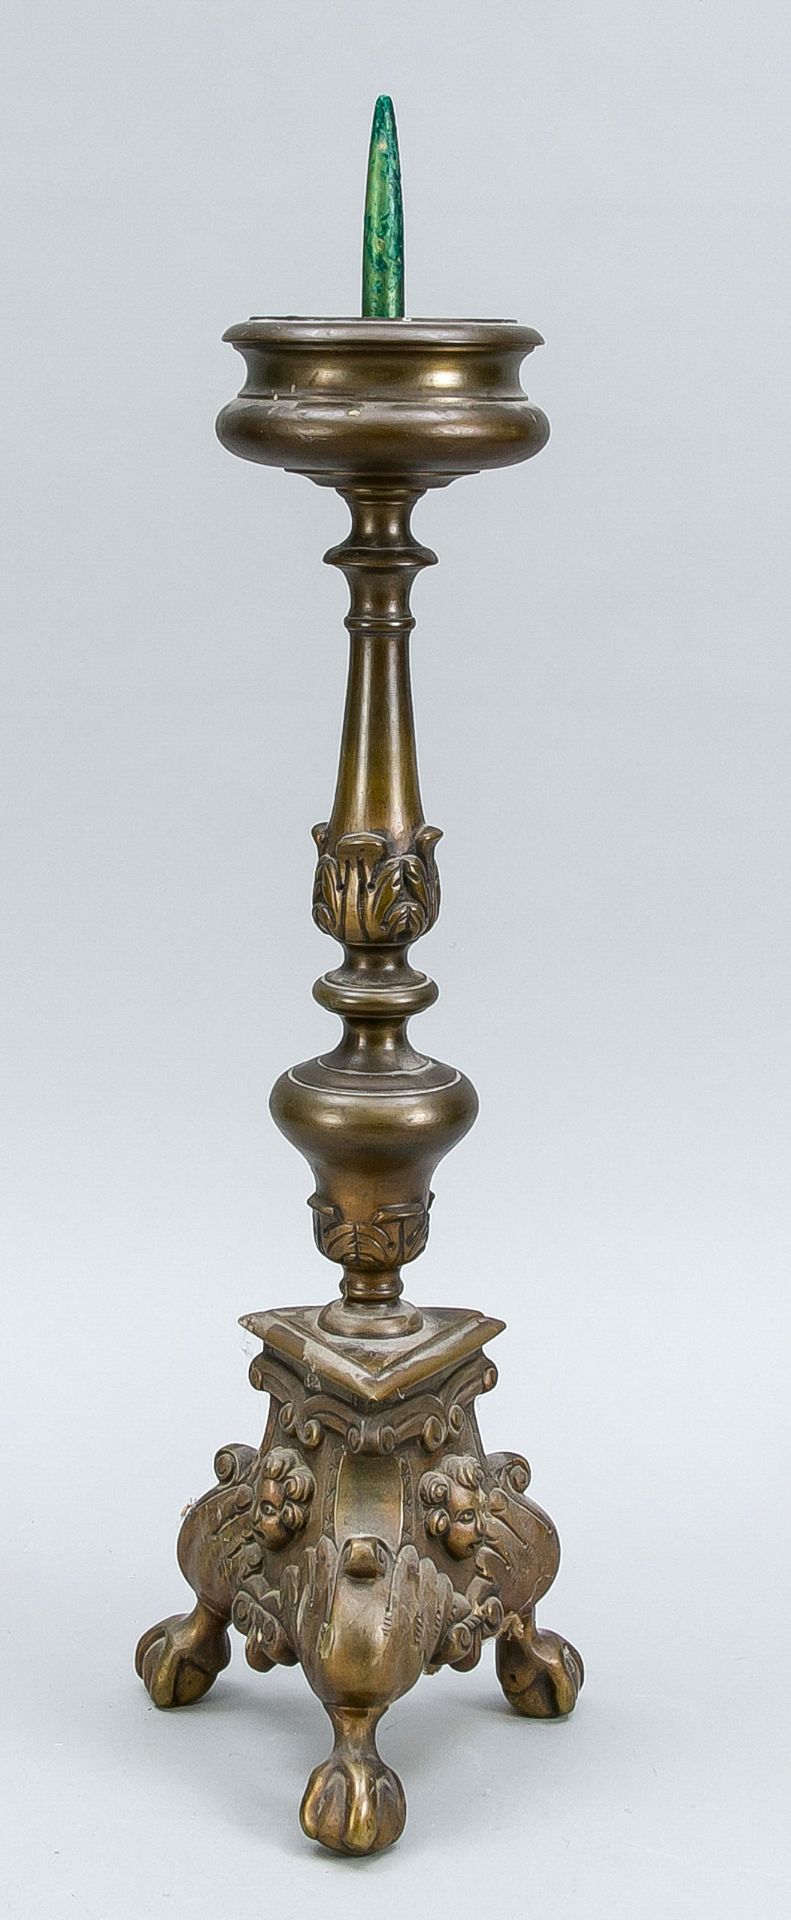 Leuchter, Ende 19. Jh., Bronze